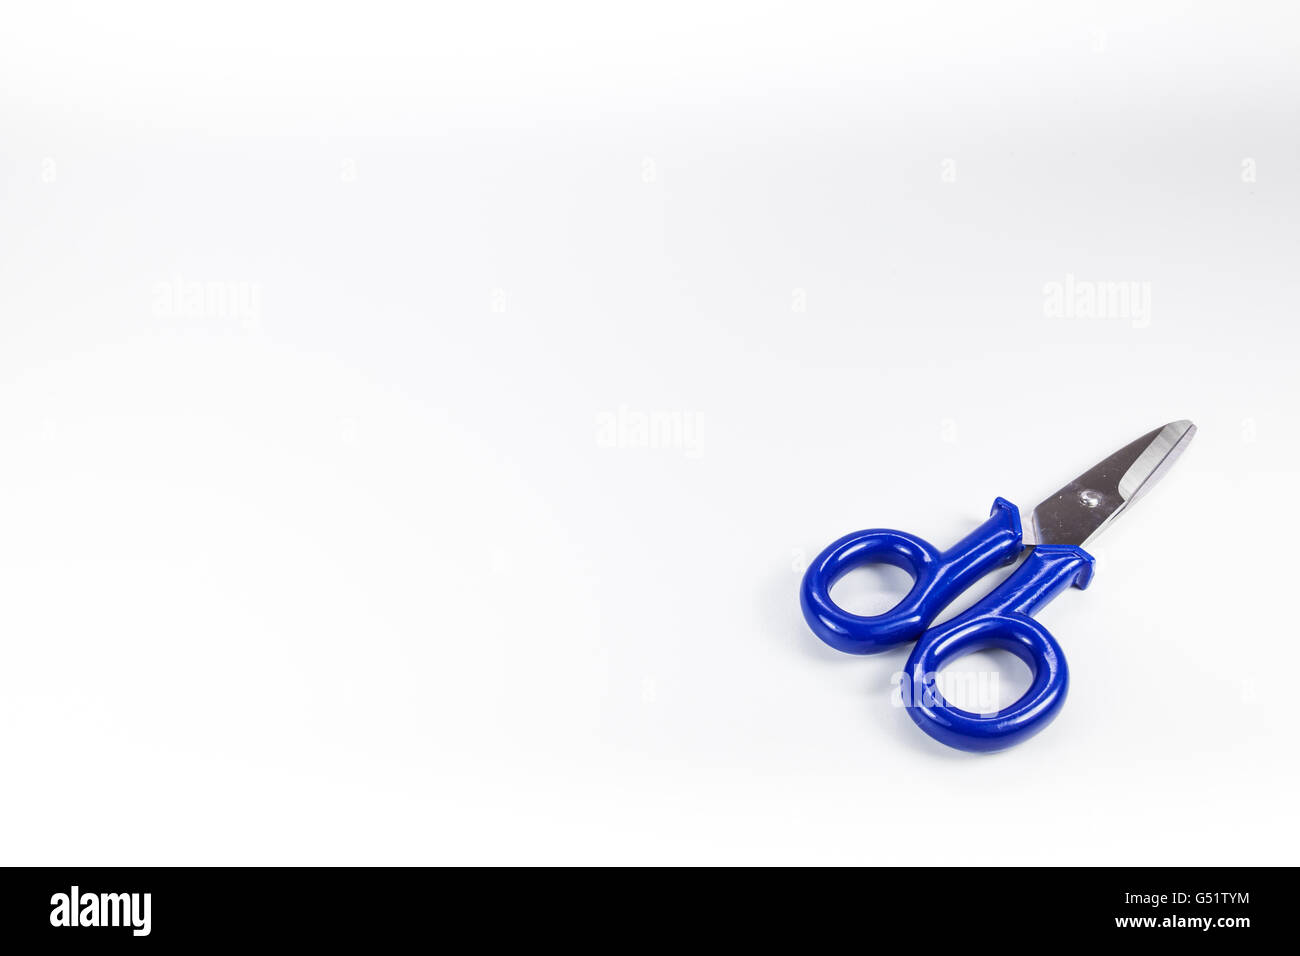 Typische elektrische verwendet Schere mit blauen Waffen Stockfoto